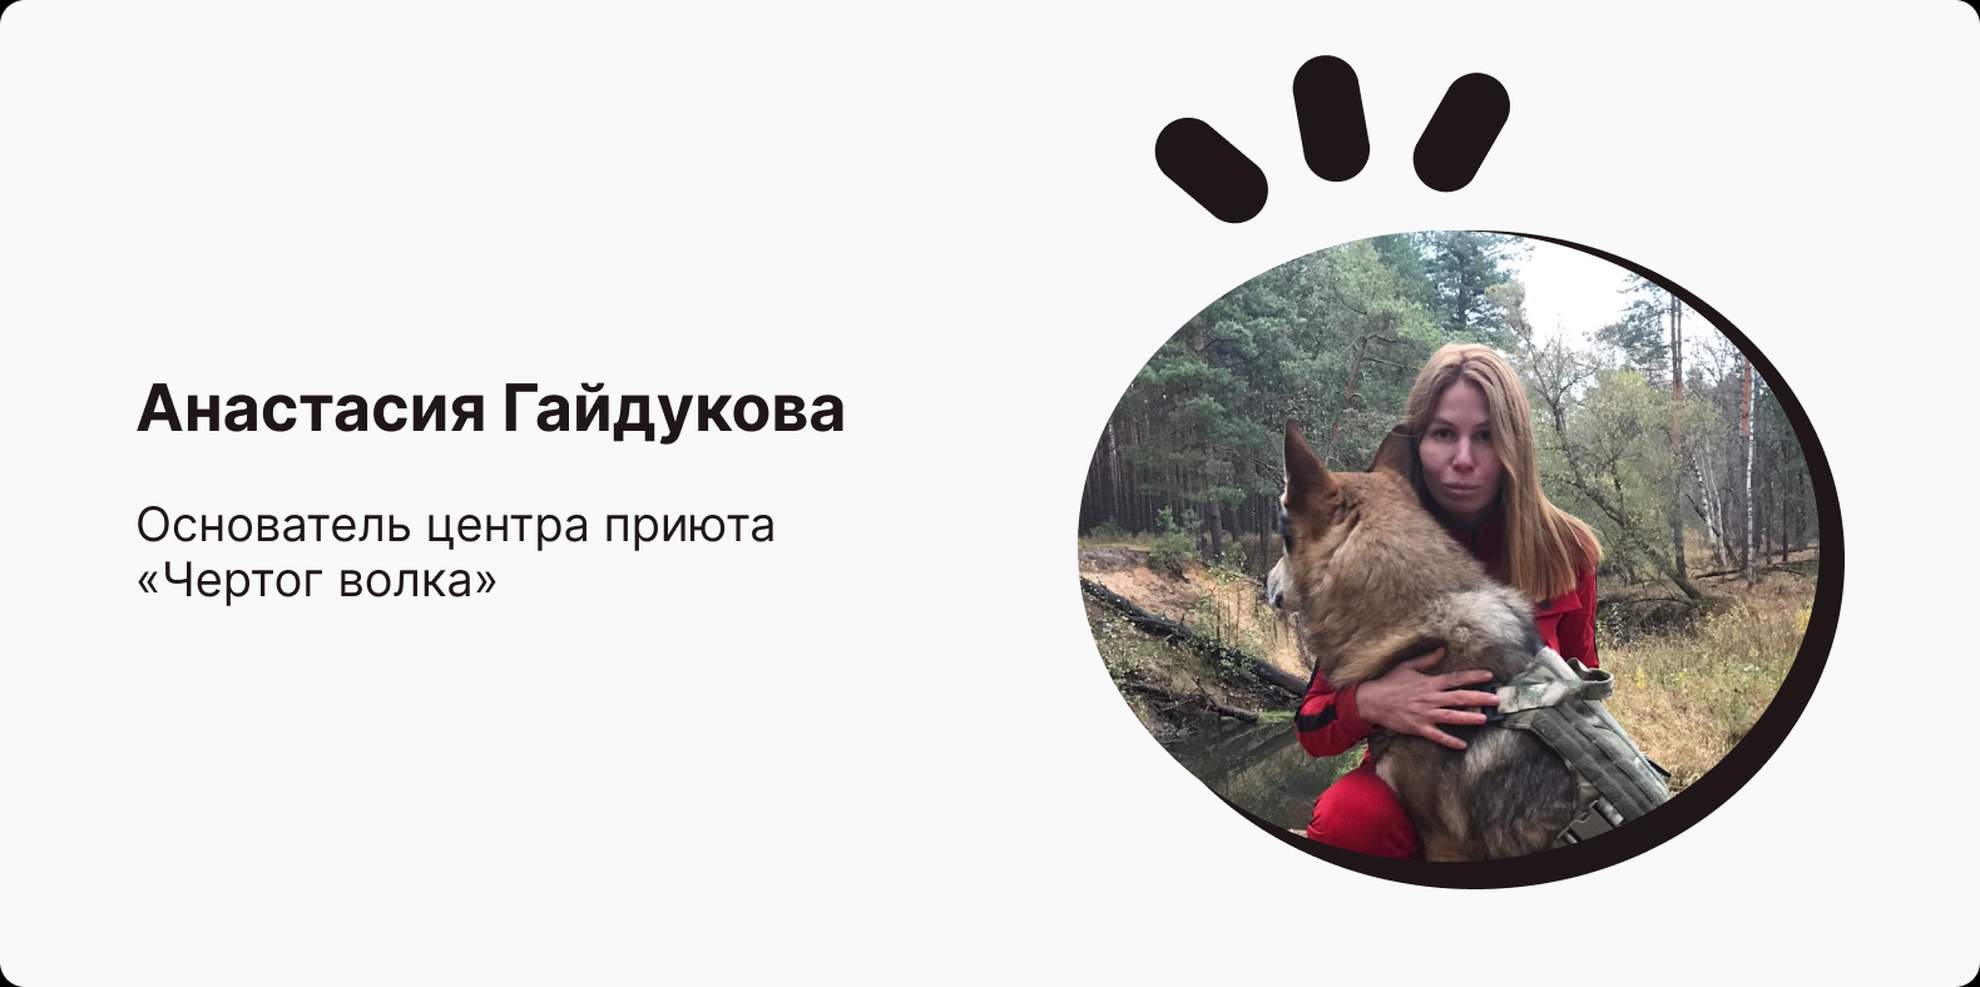 Анастасия Гайдукова, основатель центра приюта «Чертог волка»